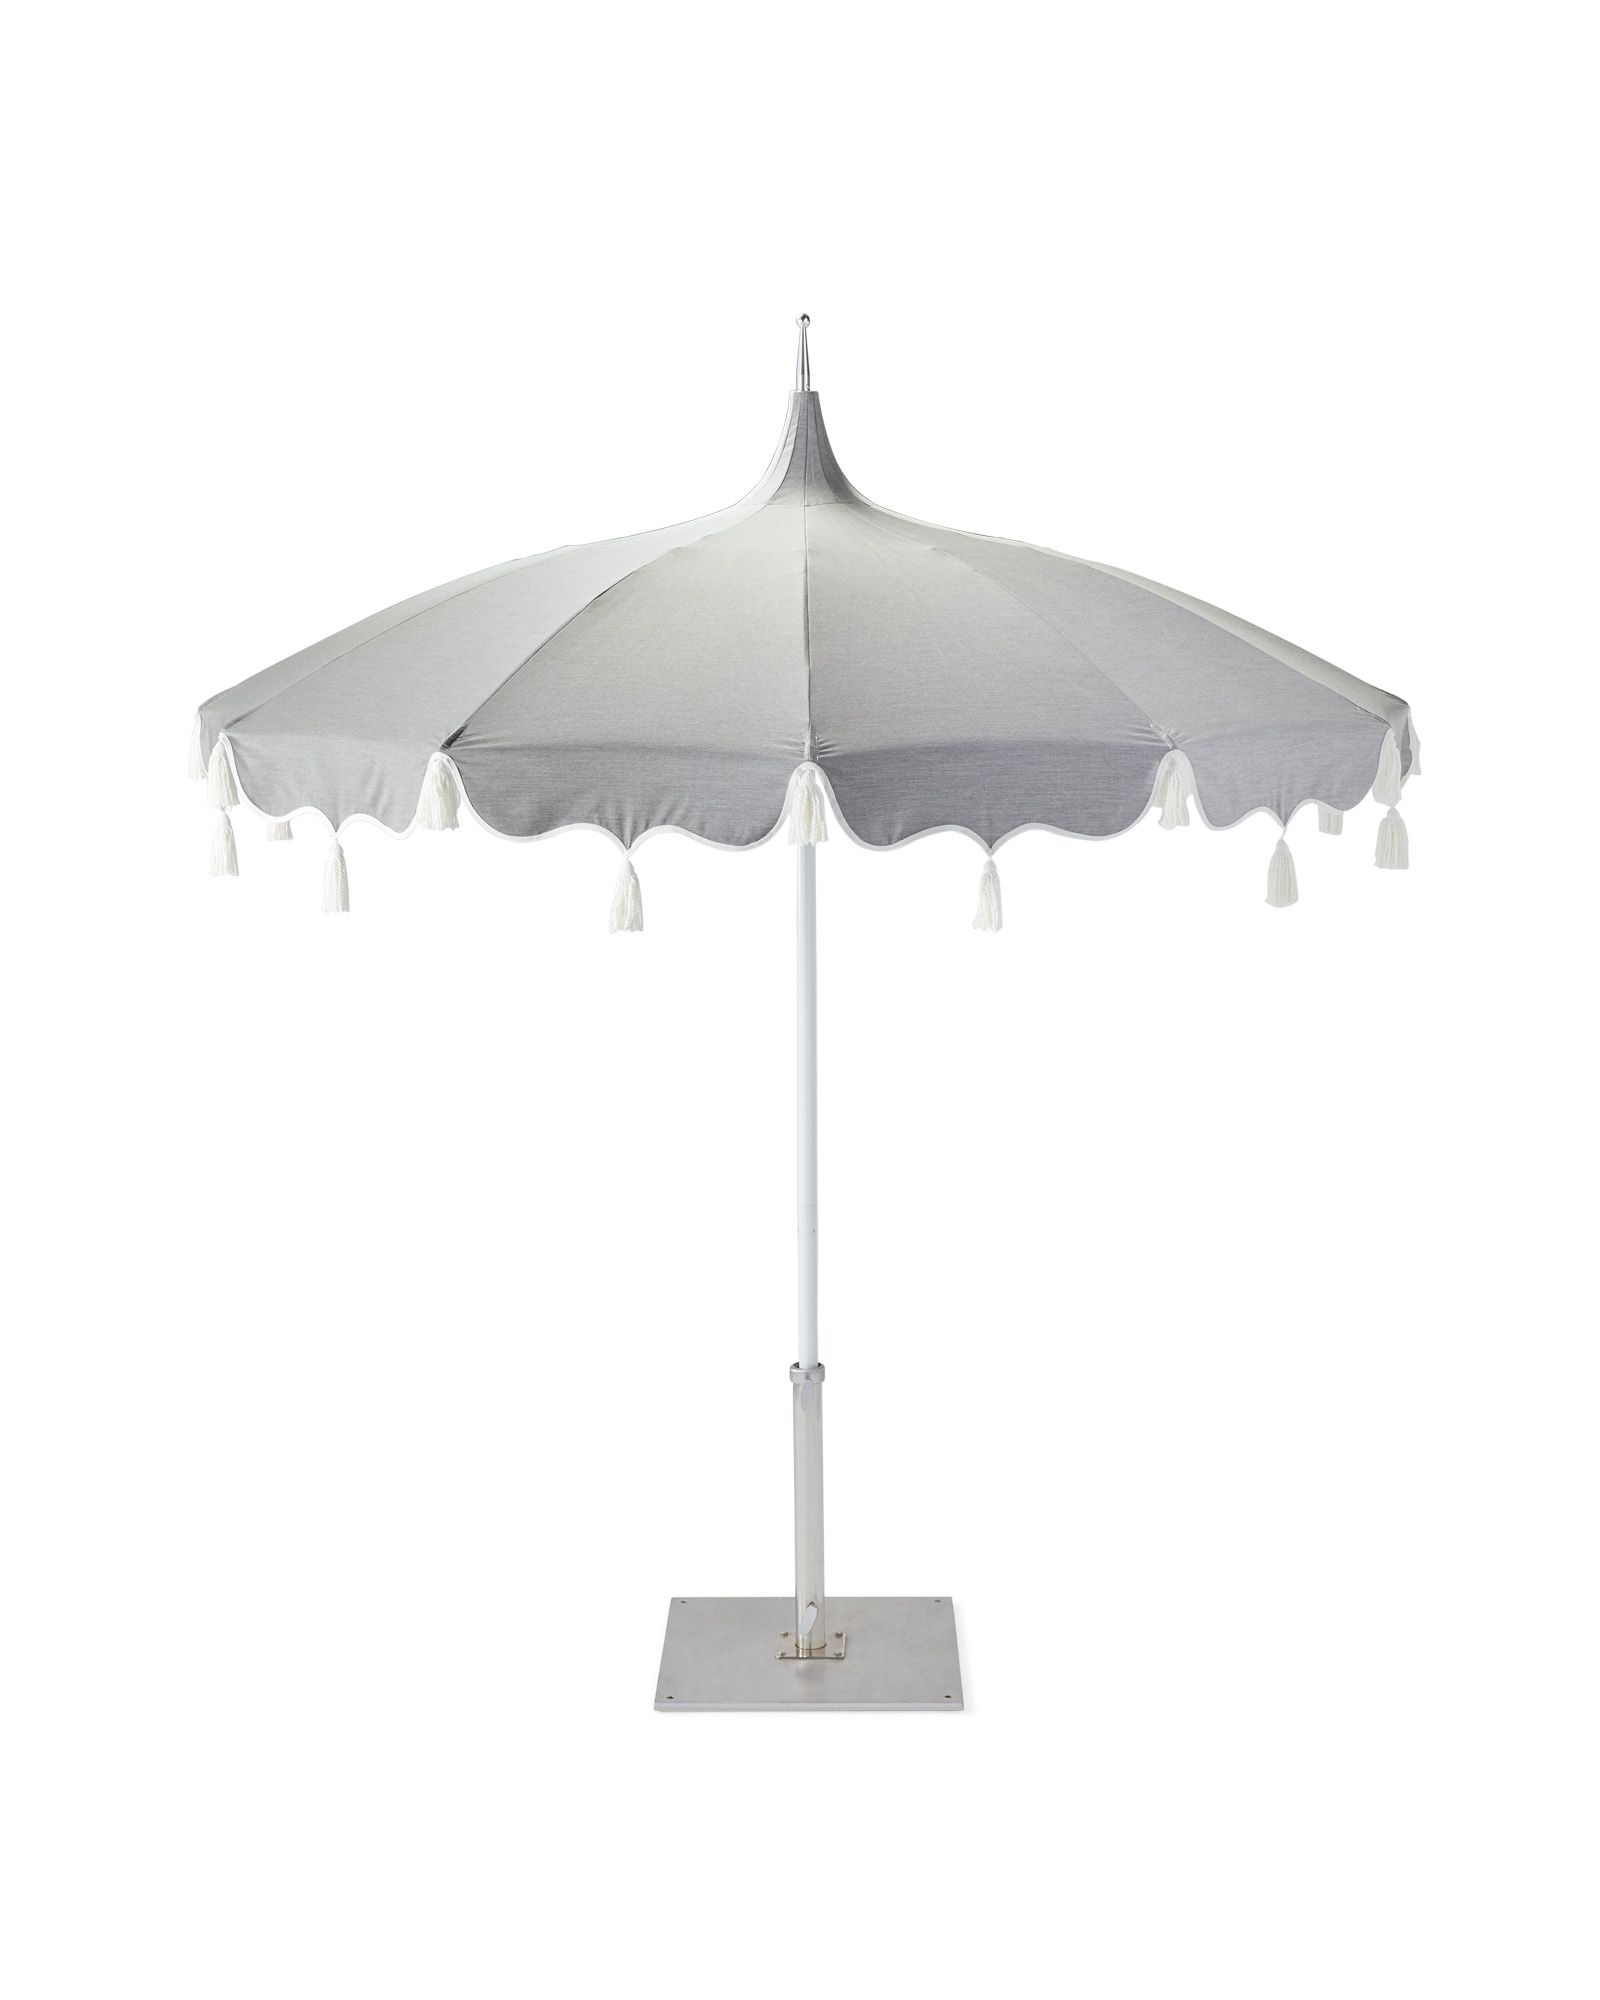 Outdoor Patio Umbrellas, Garden Parasol, Commercial Umbrellas 